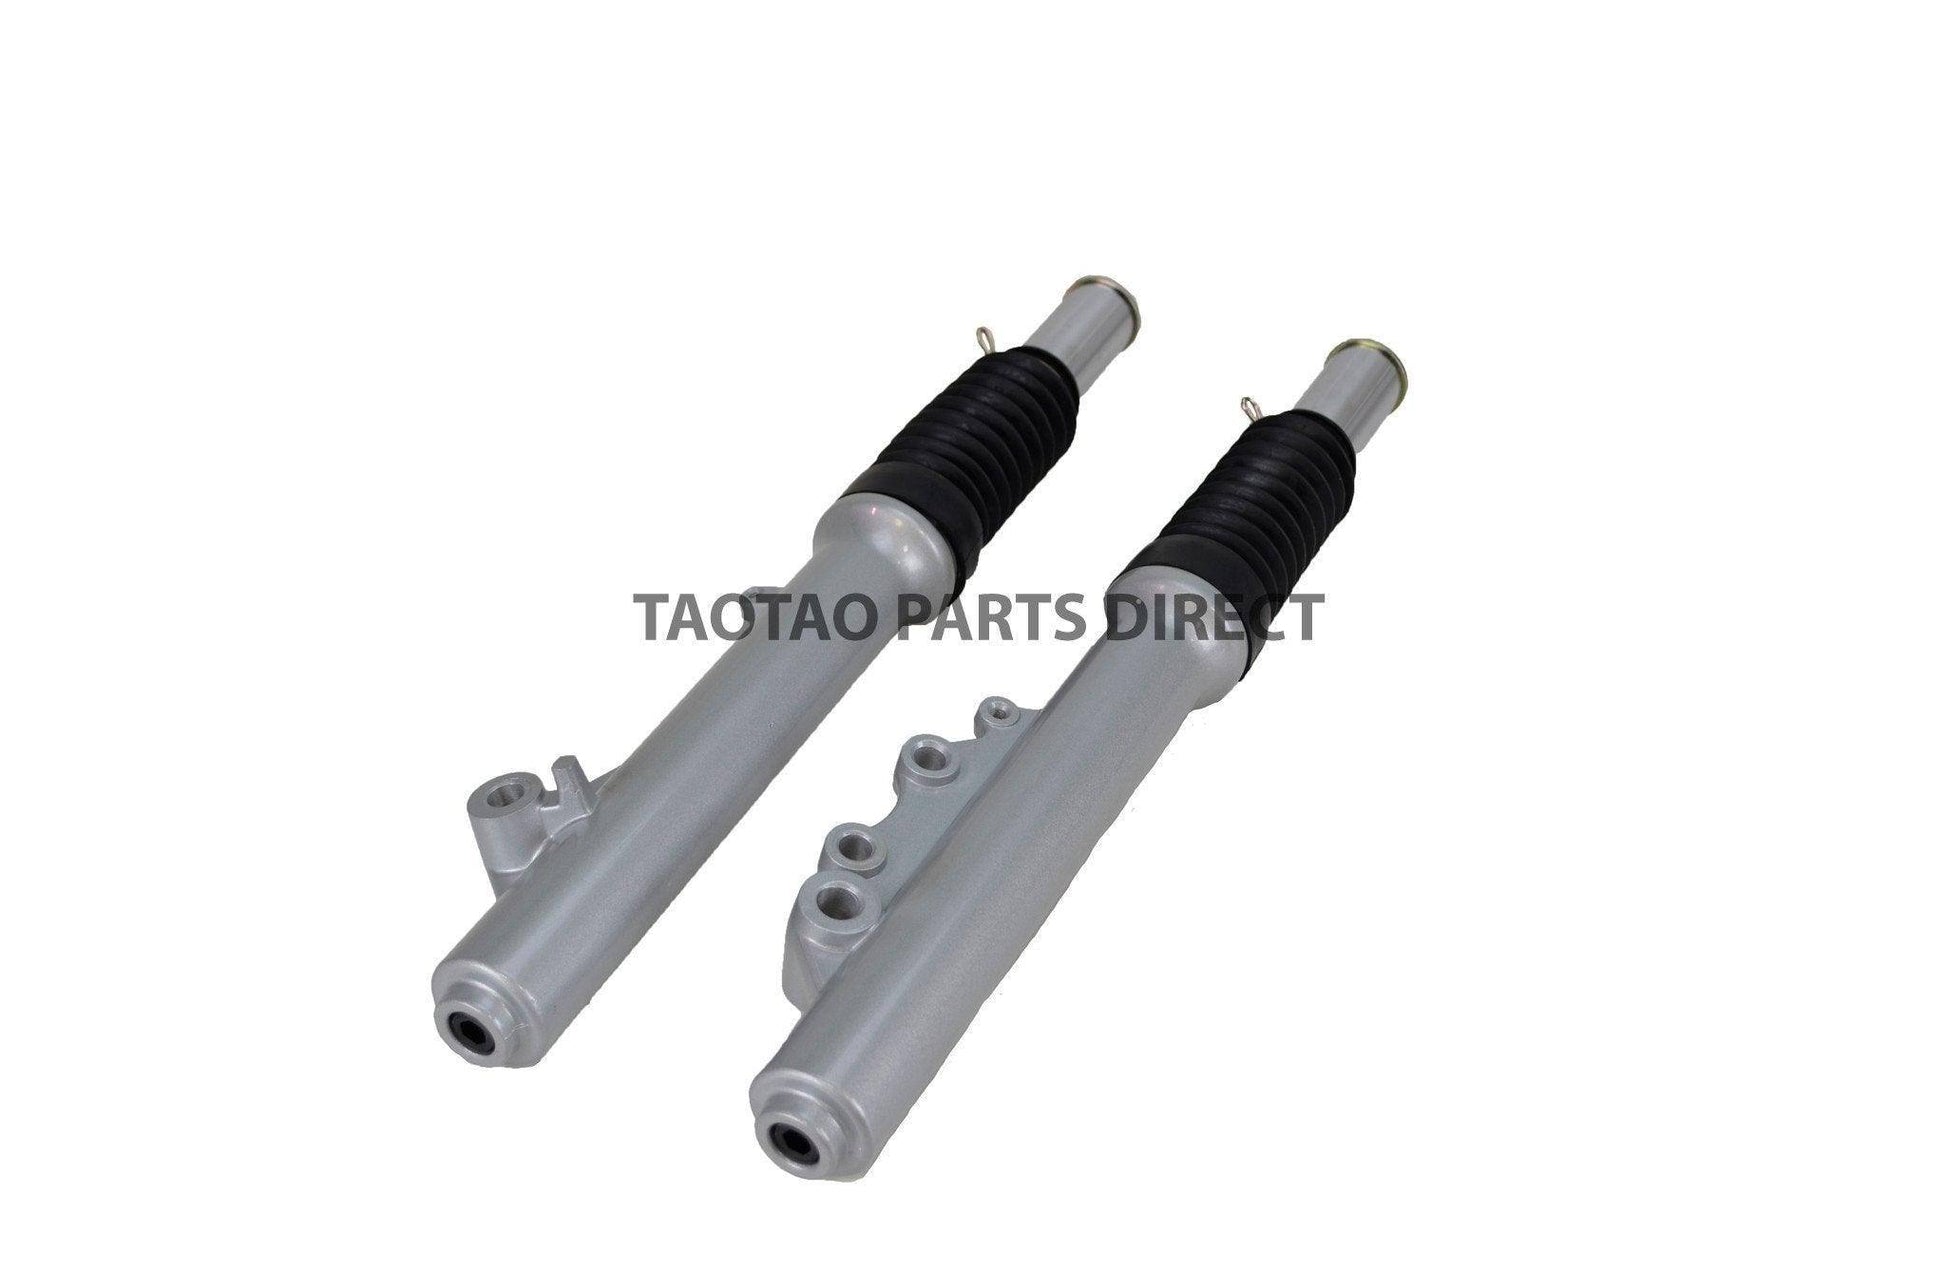 Evo 150 Front Fork Set - TaoTao Parts Direct